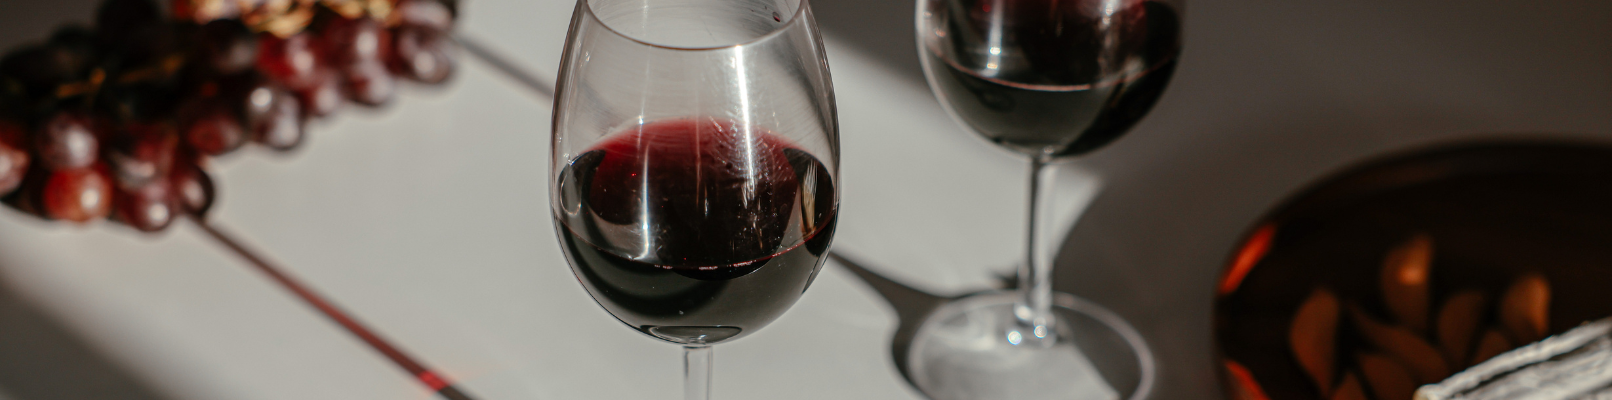 5 простых вкусностей к вину